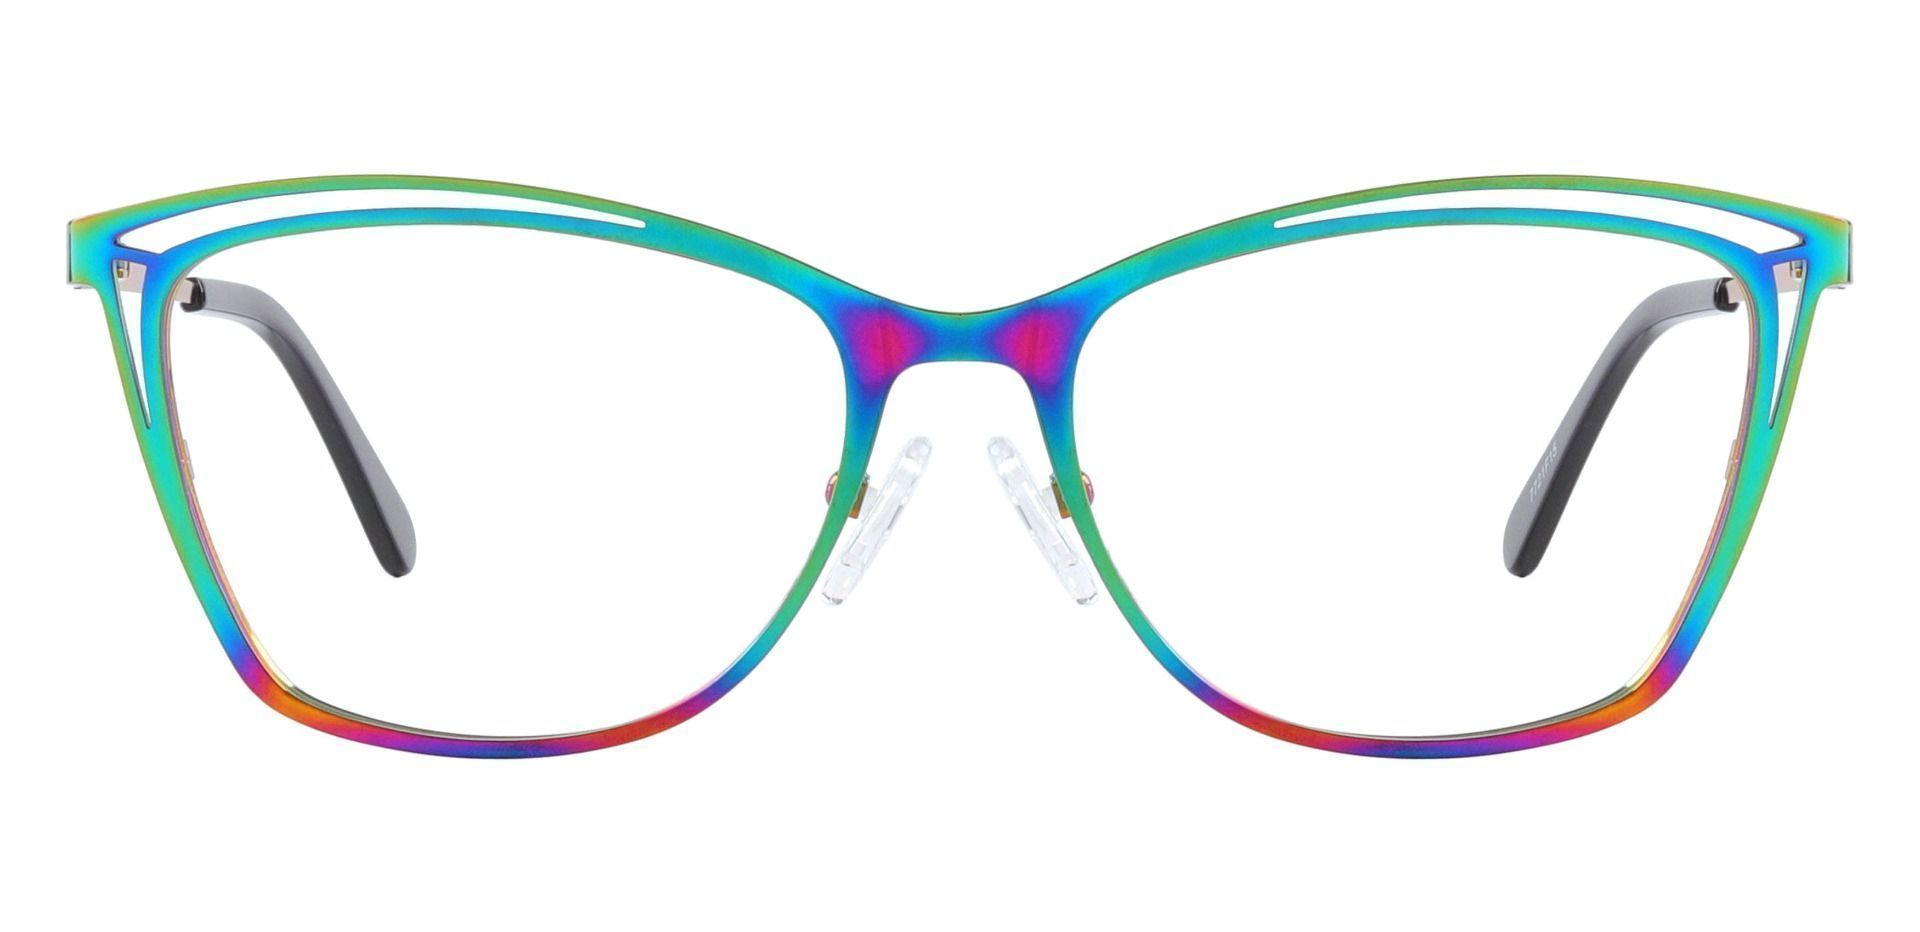 Morrow Cat Eye Prescription Glasses - Iridescent | Women's Eyeglasses |  Payne Glasses